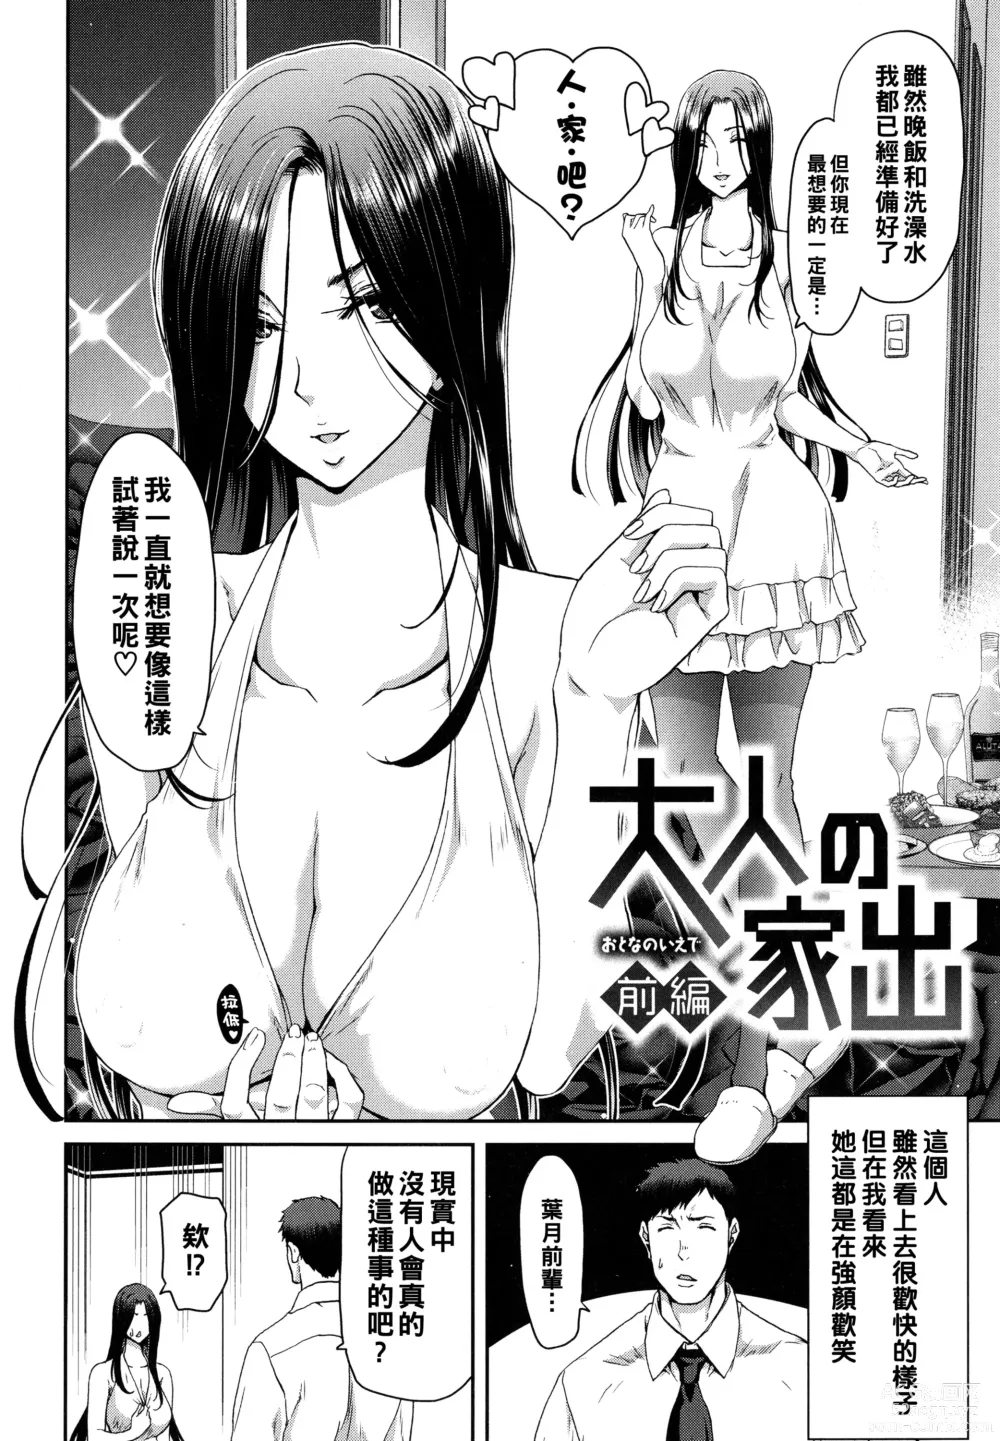 Page 6 of manga Iede Onna o Hirottara - When I picked up a runaway girl. + Melonbooks Gentei Tokuten   Otona no Iede Gojitsudan Sono Ato no Arisa to Akira